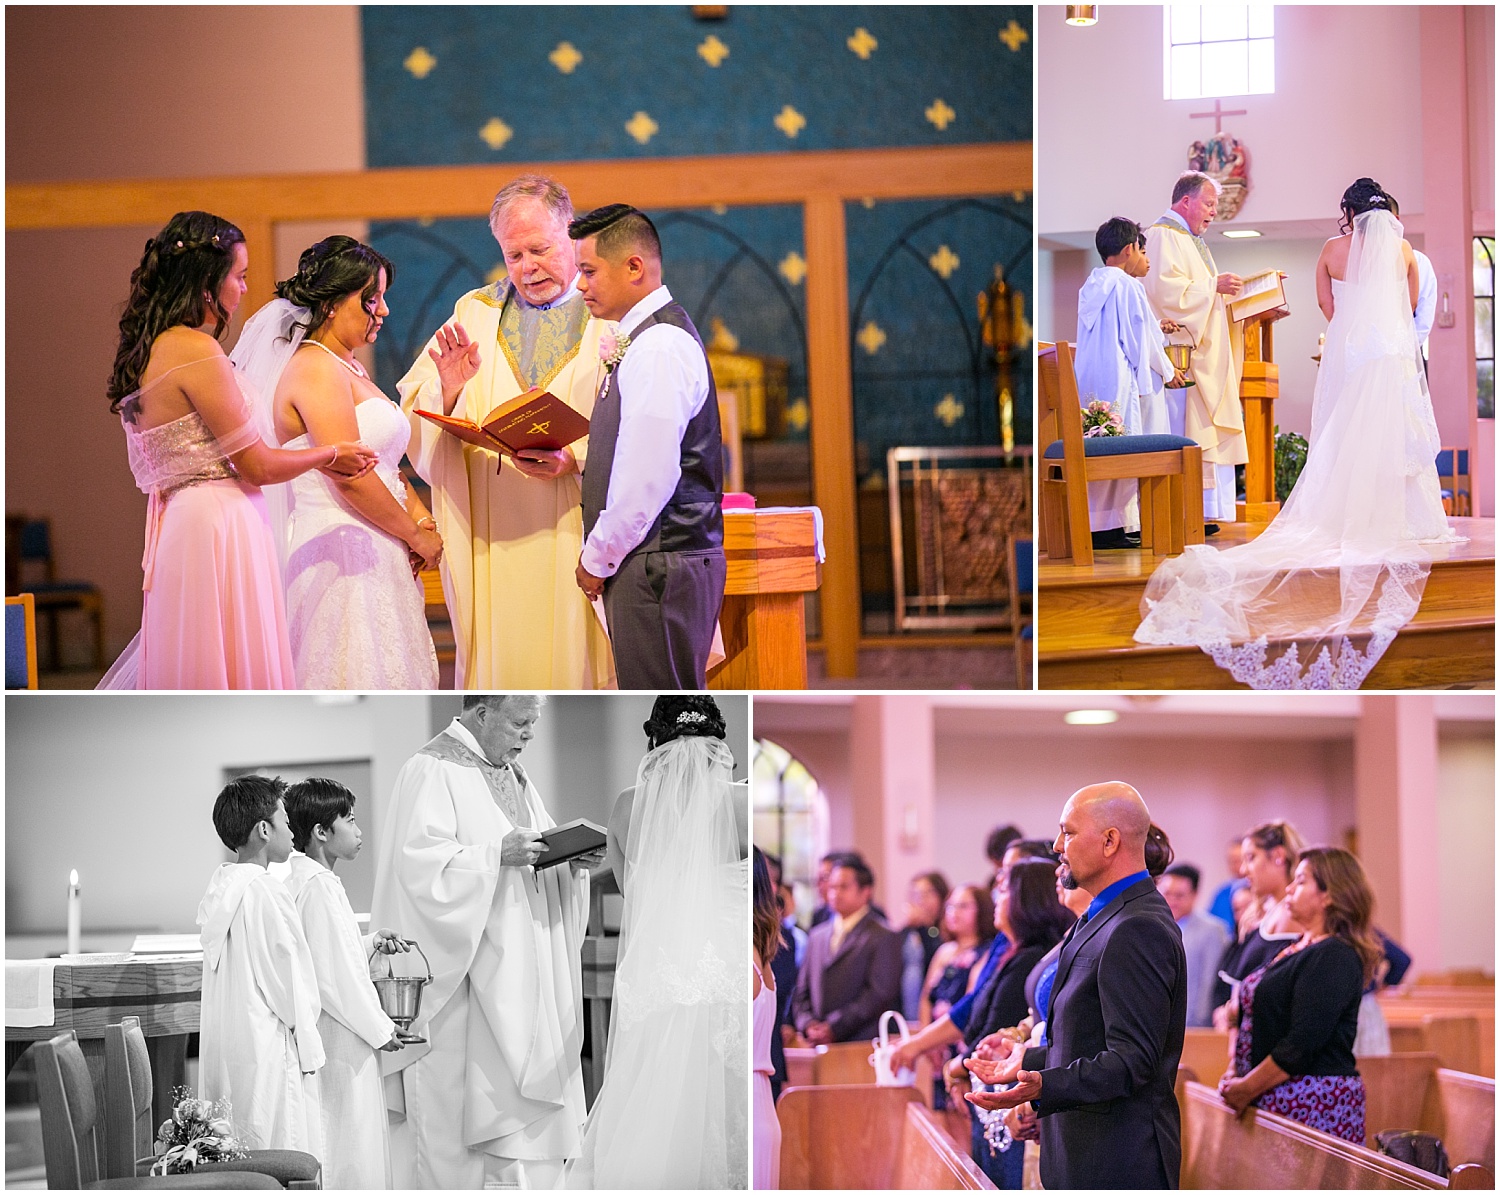 Catholic wedding ceremony at St Catherine of Sienna in Seattle, Washington.